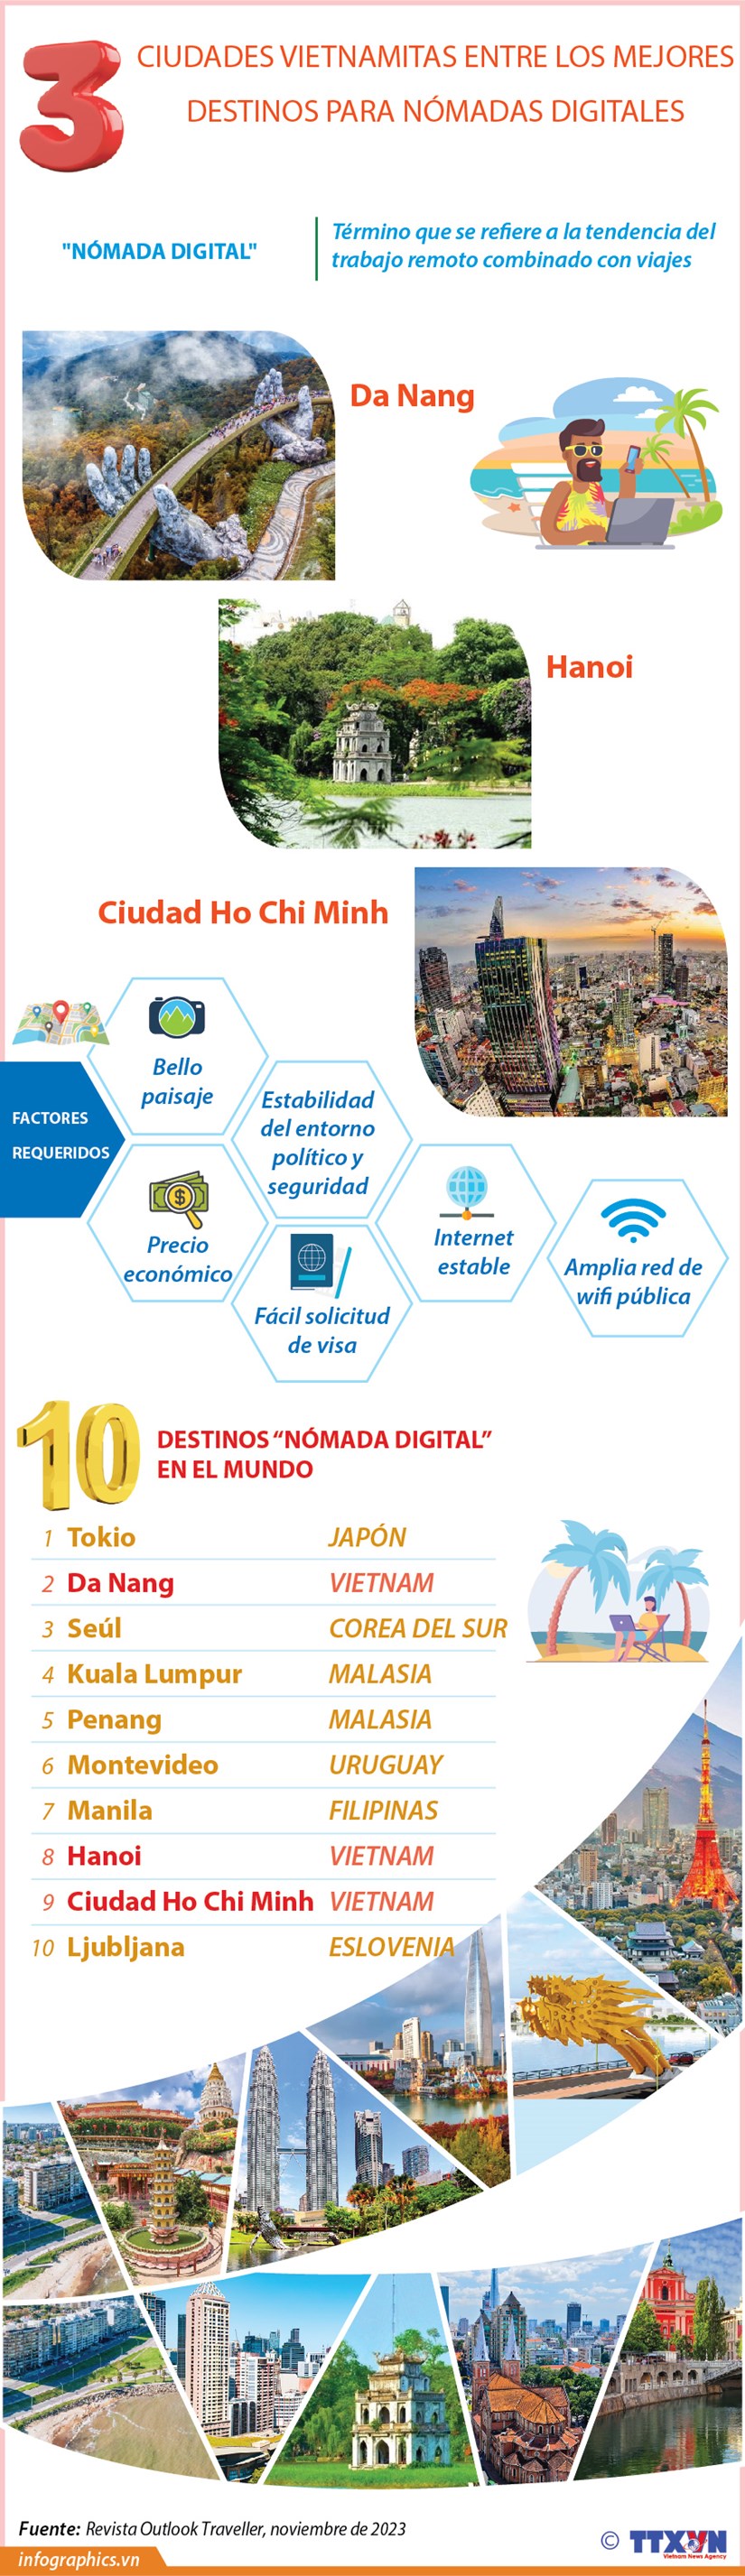 Ciudades vietnamitas entre los mejores destinos para nomadas digitales hinh anh 1